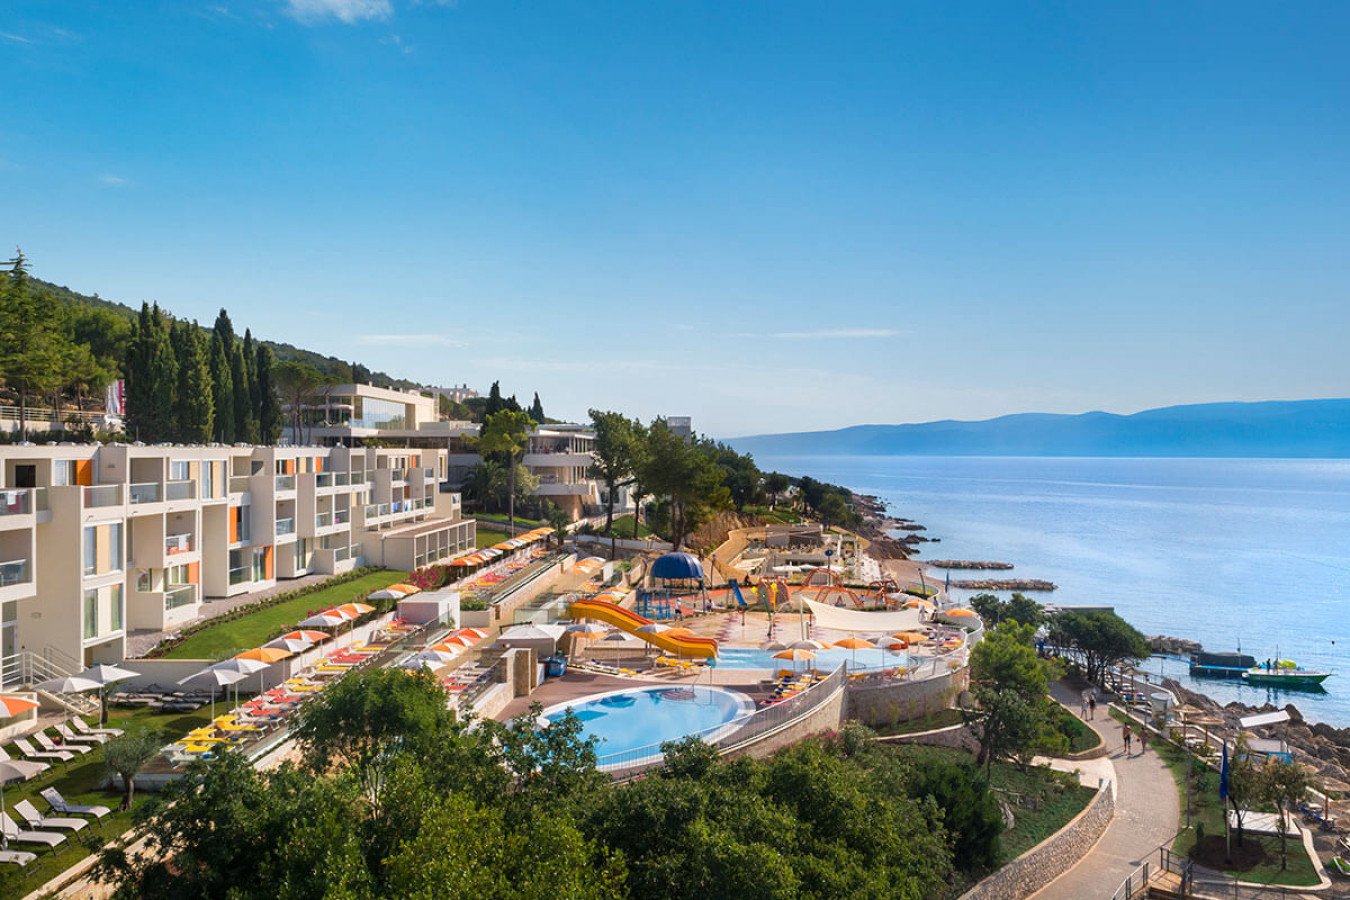 Beach hotels in Croatia